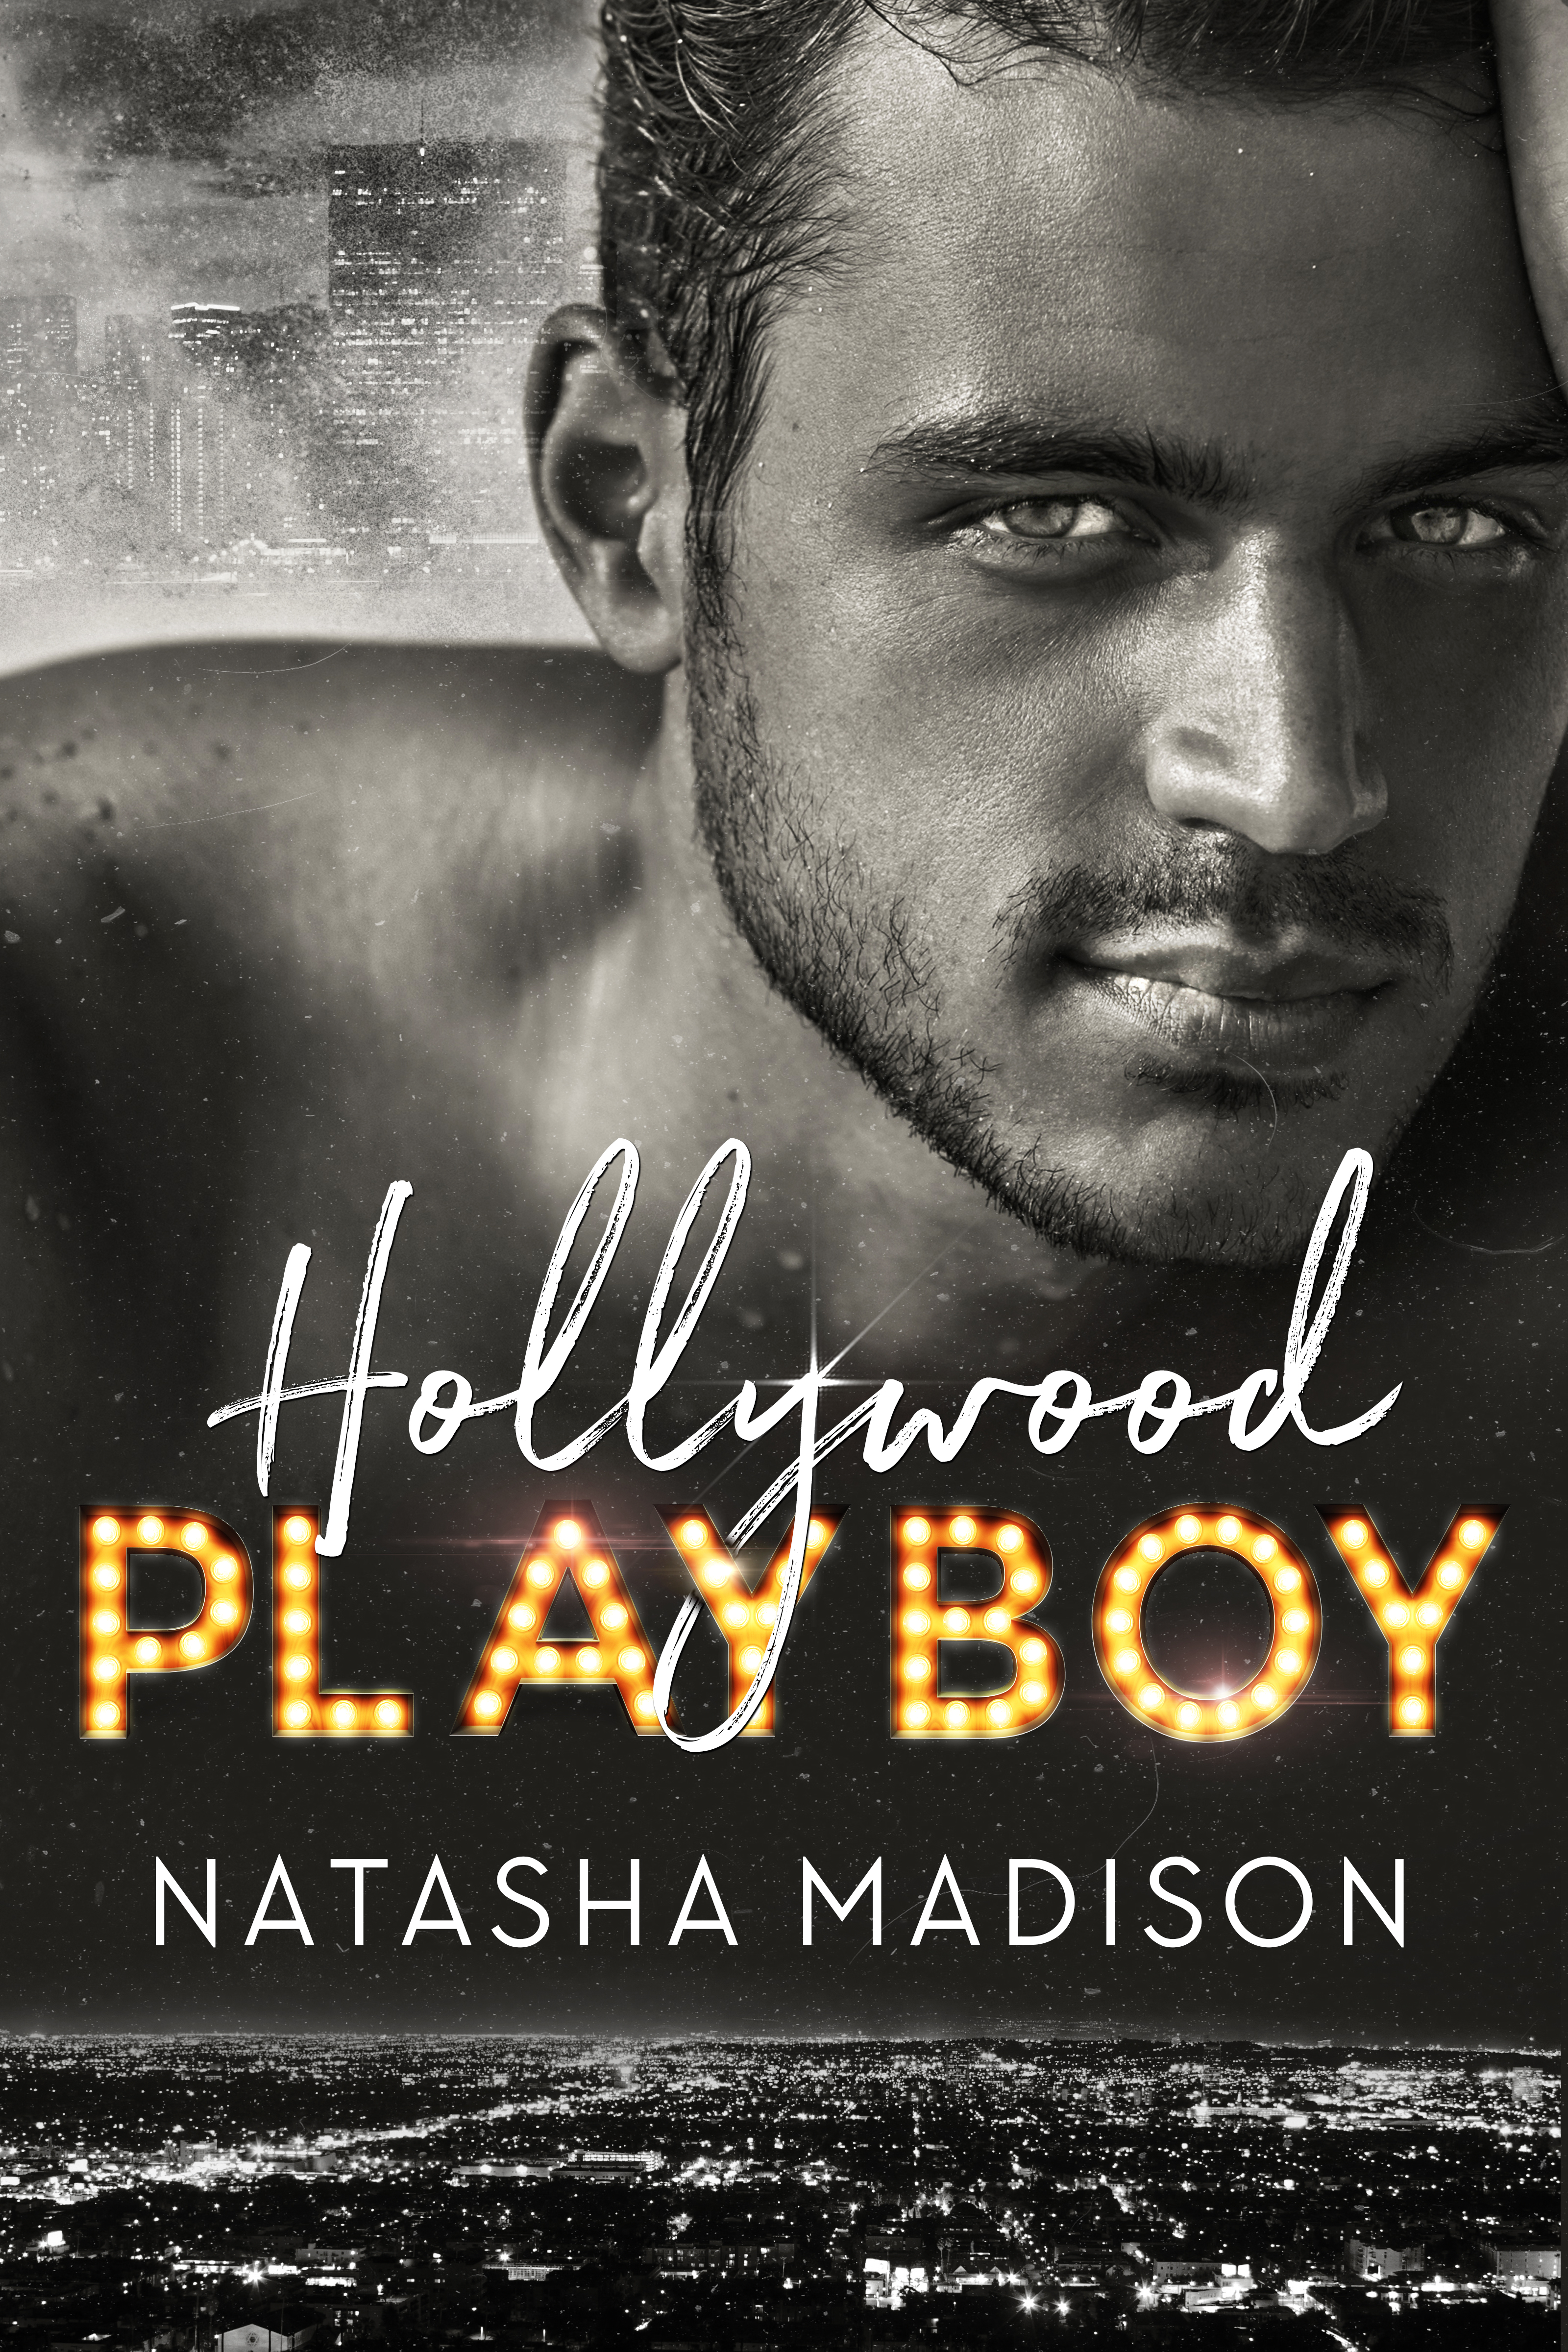 Hollywood Playboy by Natasha Madison [Cover Reveal]